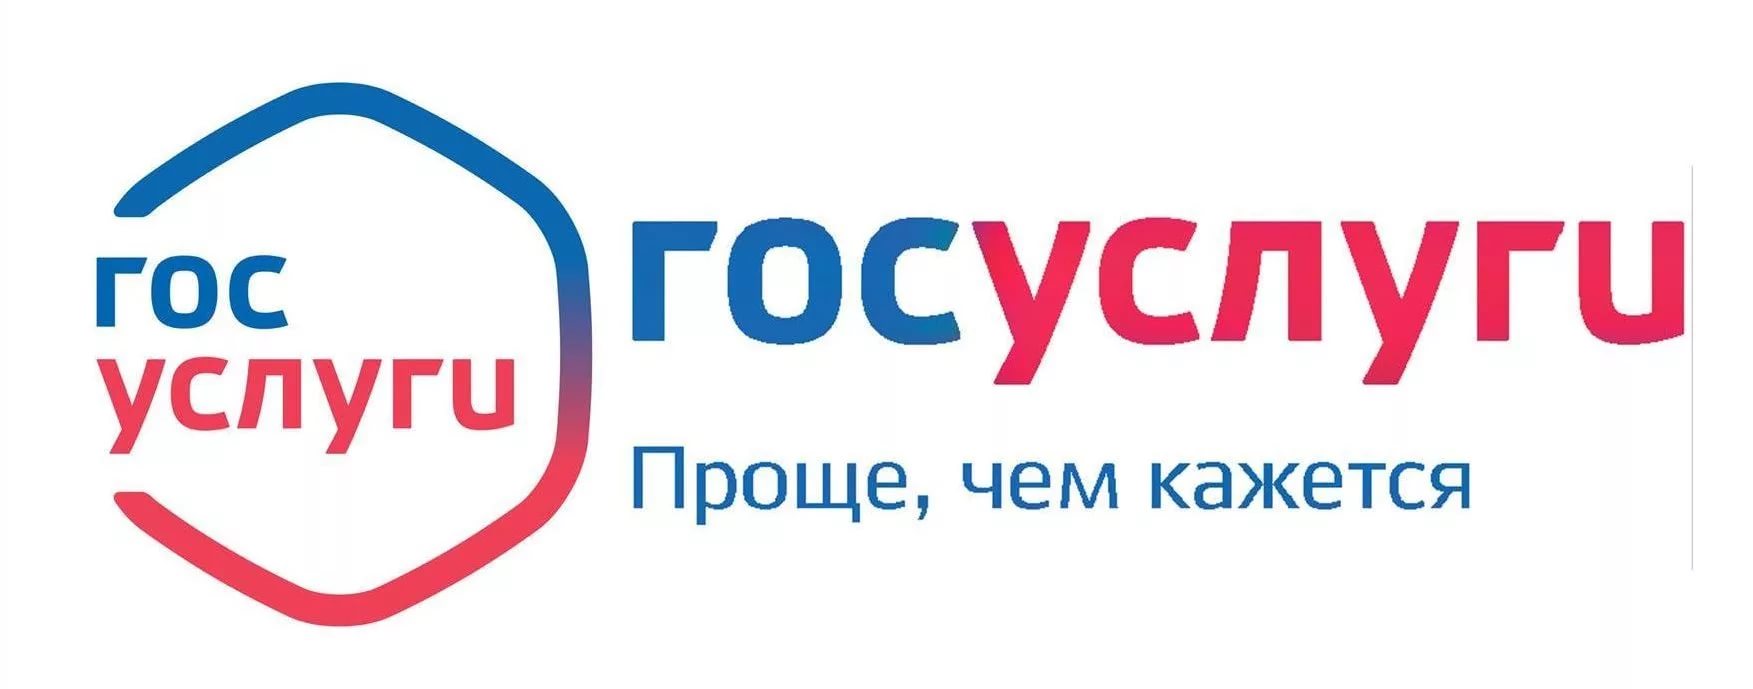 За год жители Ивановской области подали более 200 тысяч заявлений через портал госуслуг  